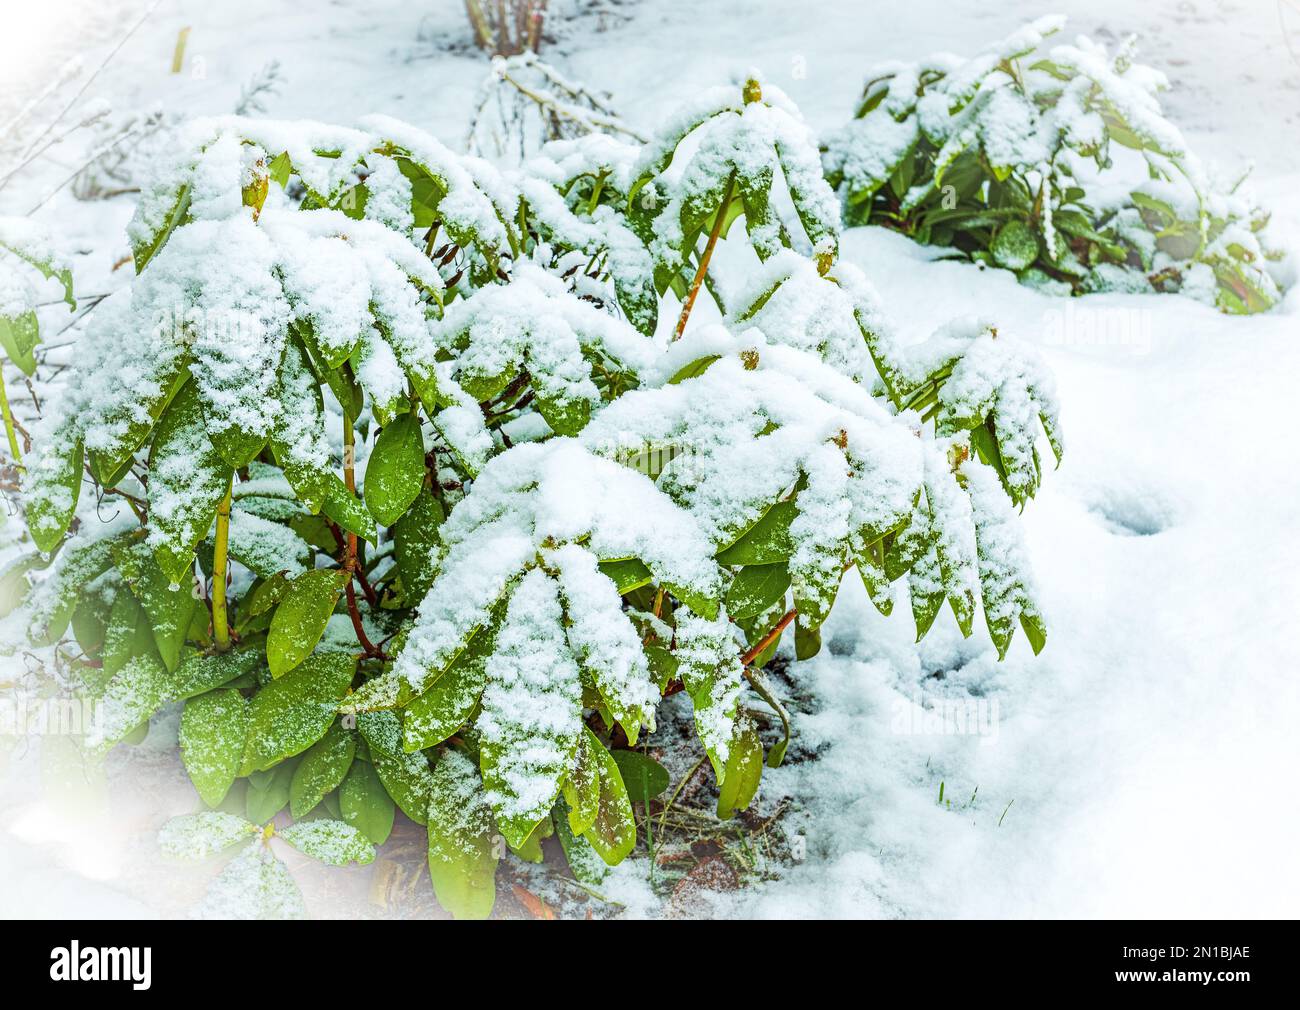 Scène d'hiver, buisson de rhododendron à feuilles persistantes recouvert de neige fraîche. Banque D'Images